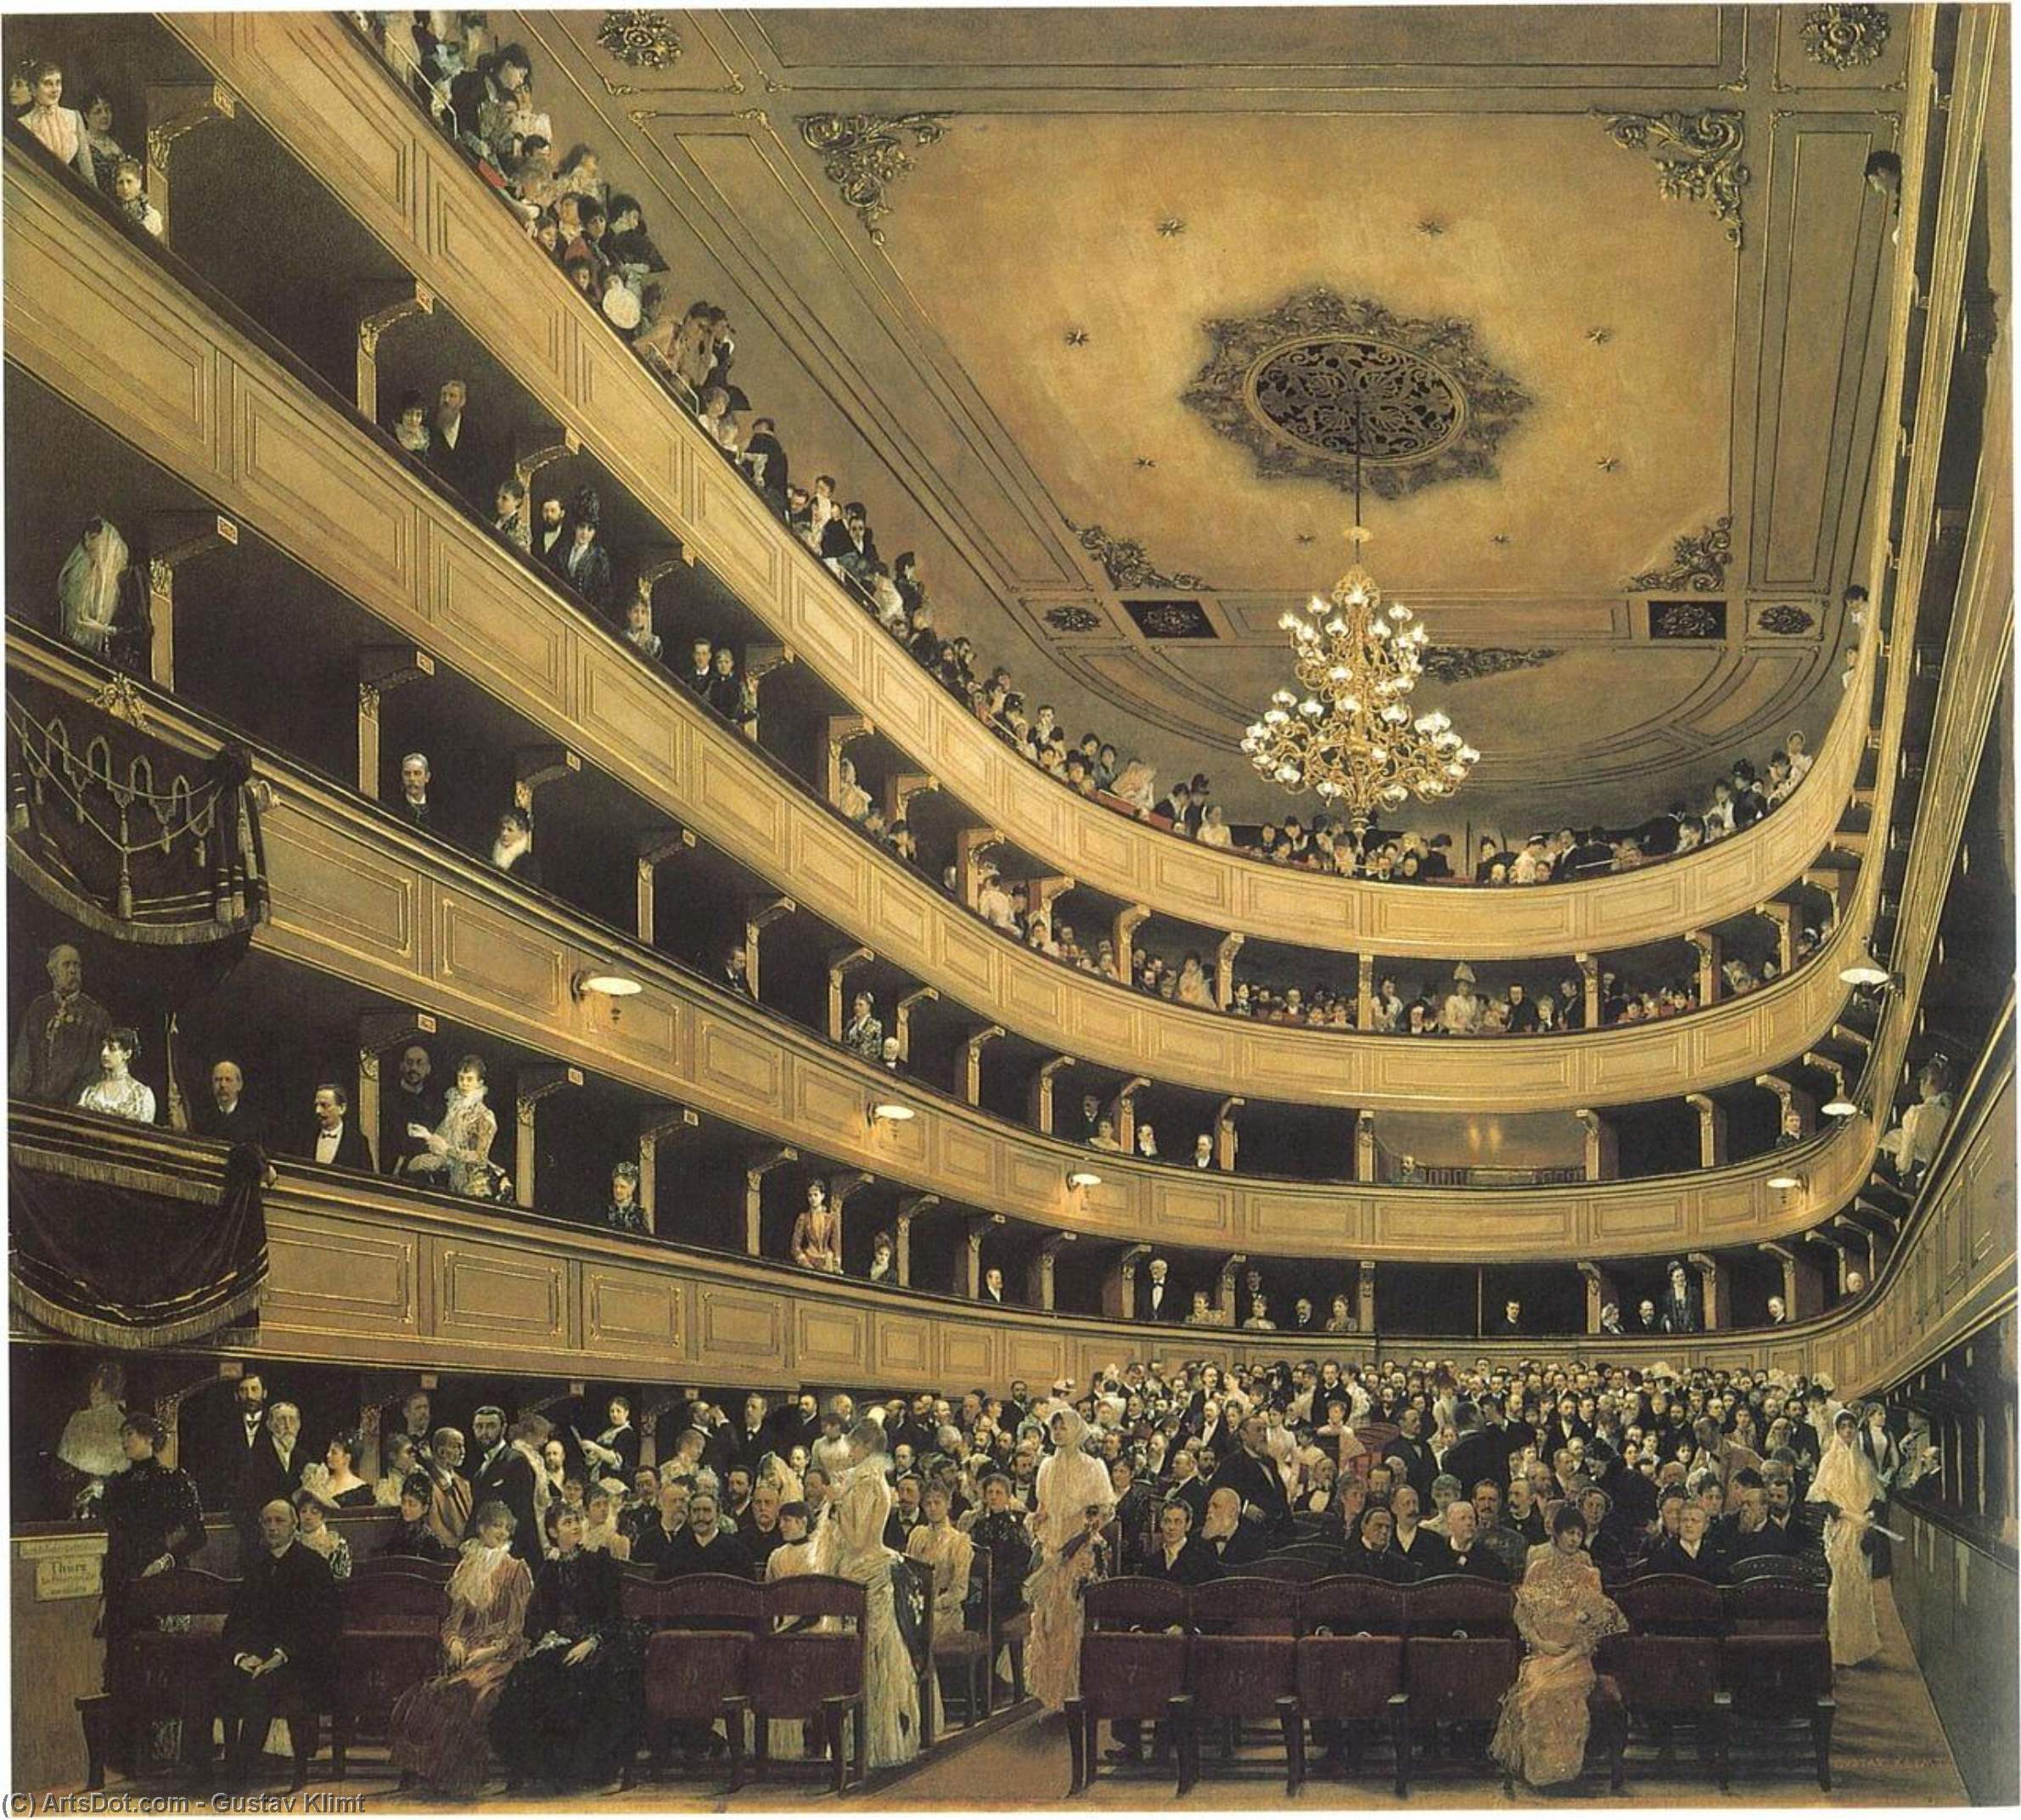 WikiOO.org - אנציקלופדיה לאמנויות יפות - ציור, יצירות אמנות Gustav Klimt - Auditoriumin the Old Burgtheater, Vienna